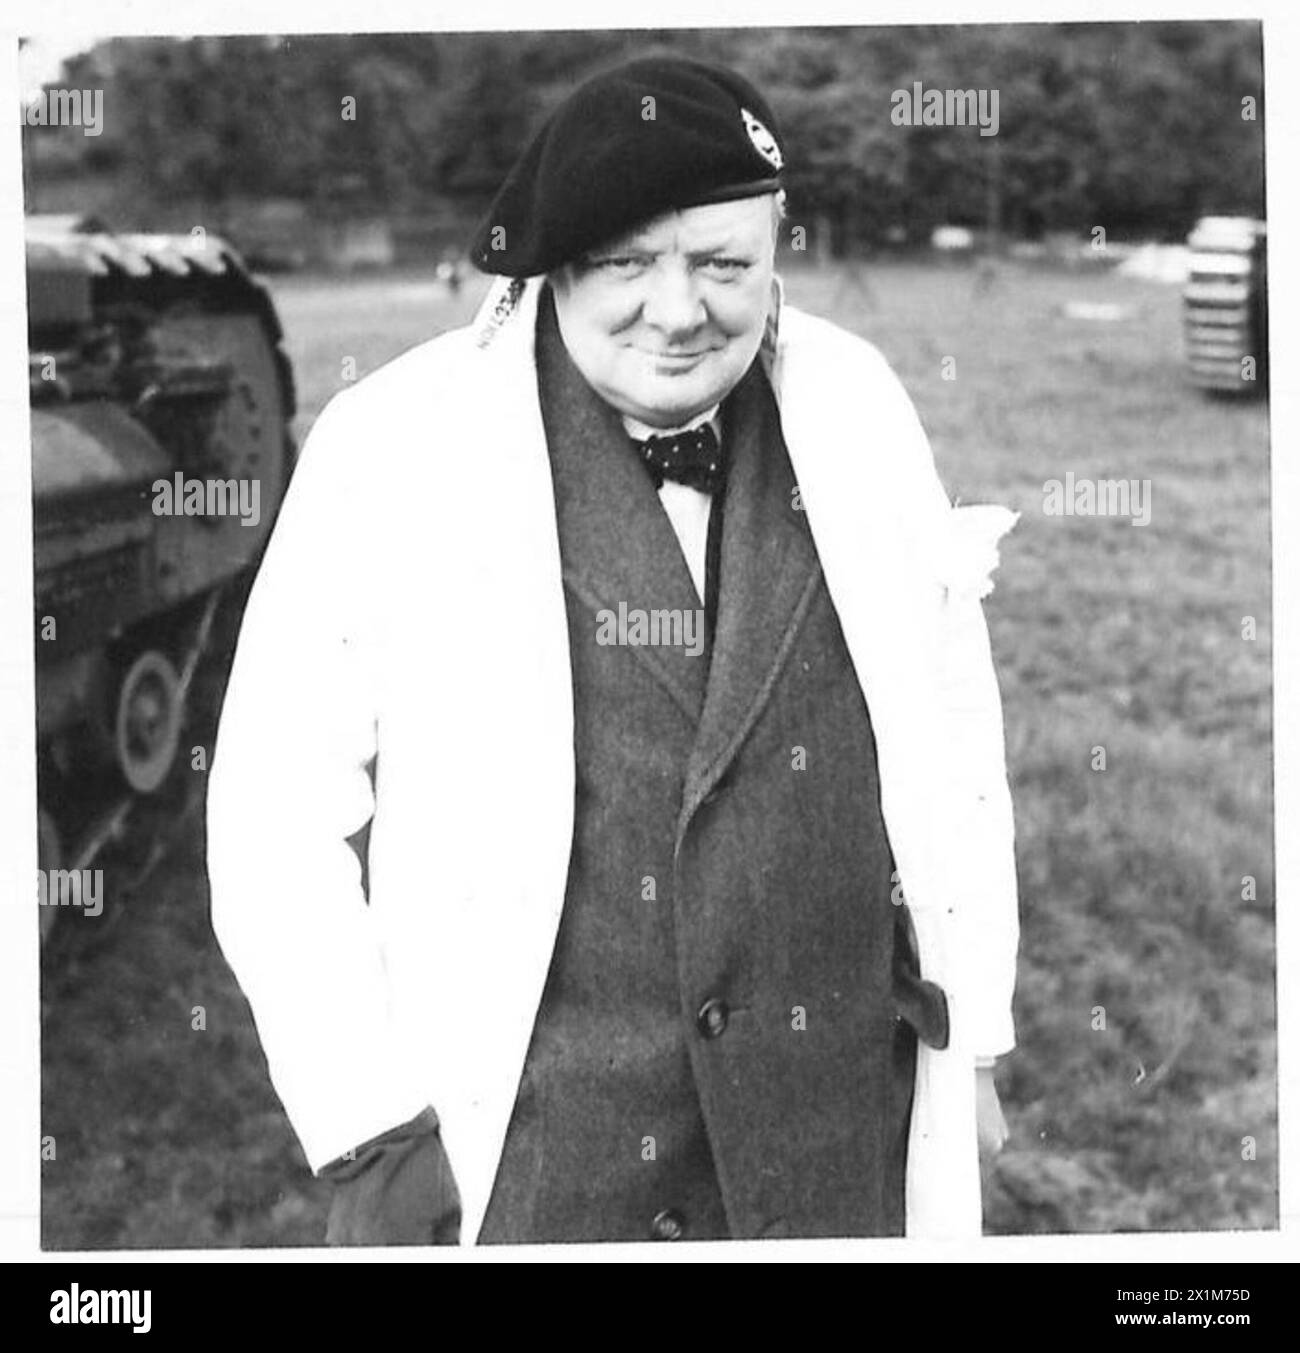 IL PRIMO MINISTRO VA IN CISTERNA, il signor Churchill indossa il berretto del corpo dei carri armati. Indossava anche un cappotto bianco per proteggere i suoi vestiti durante il viaggio, British Army Foto Stock